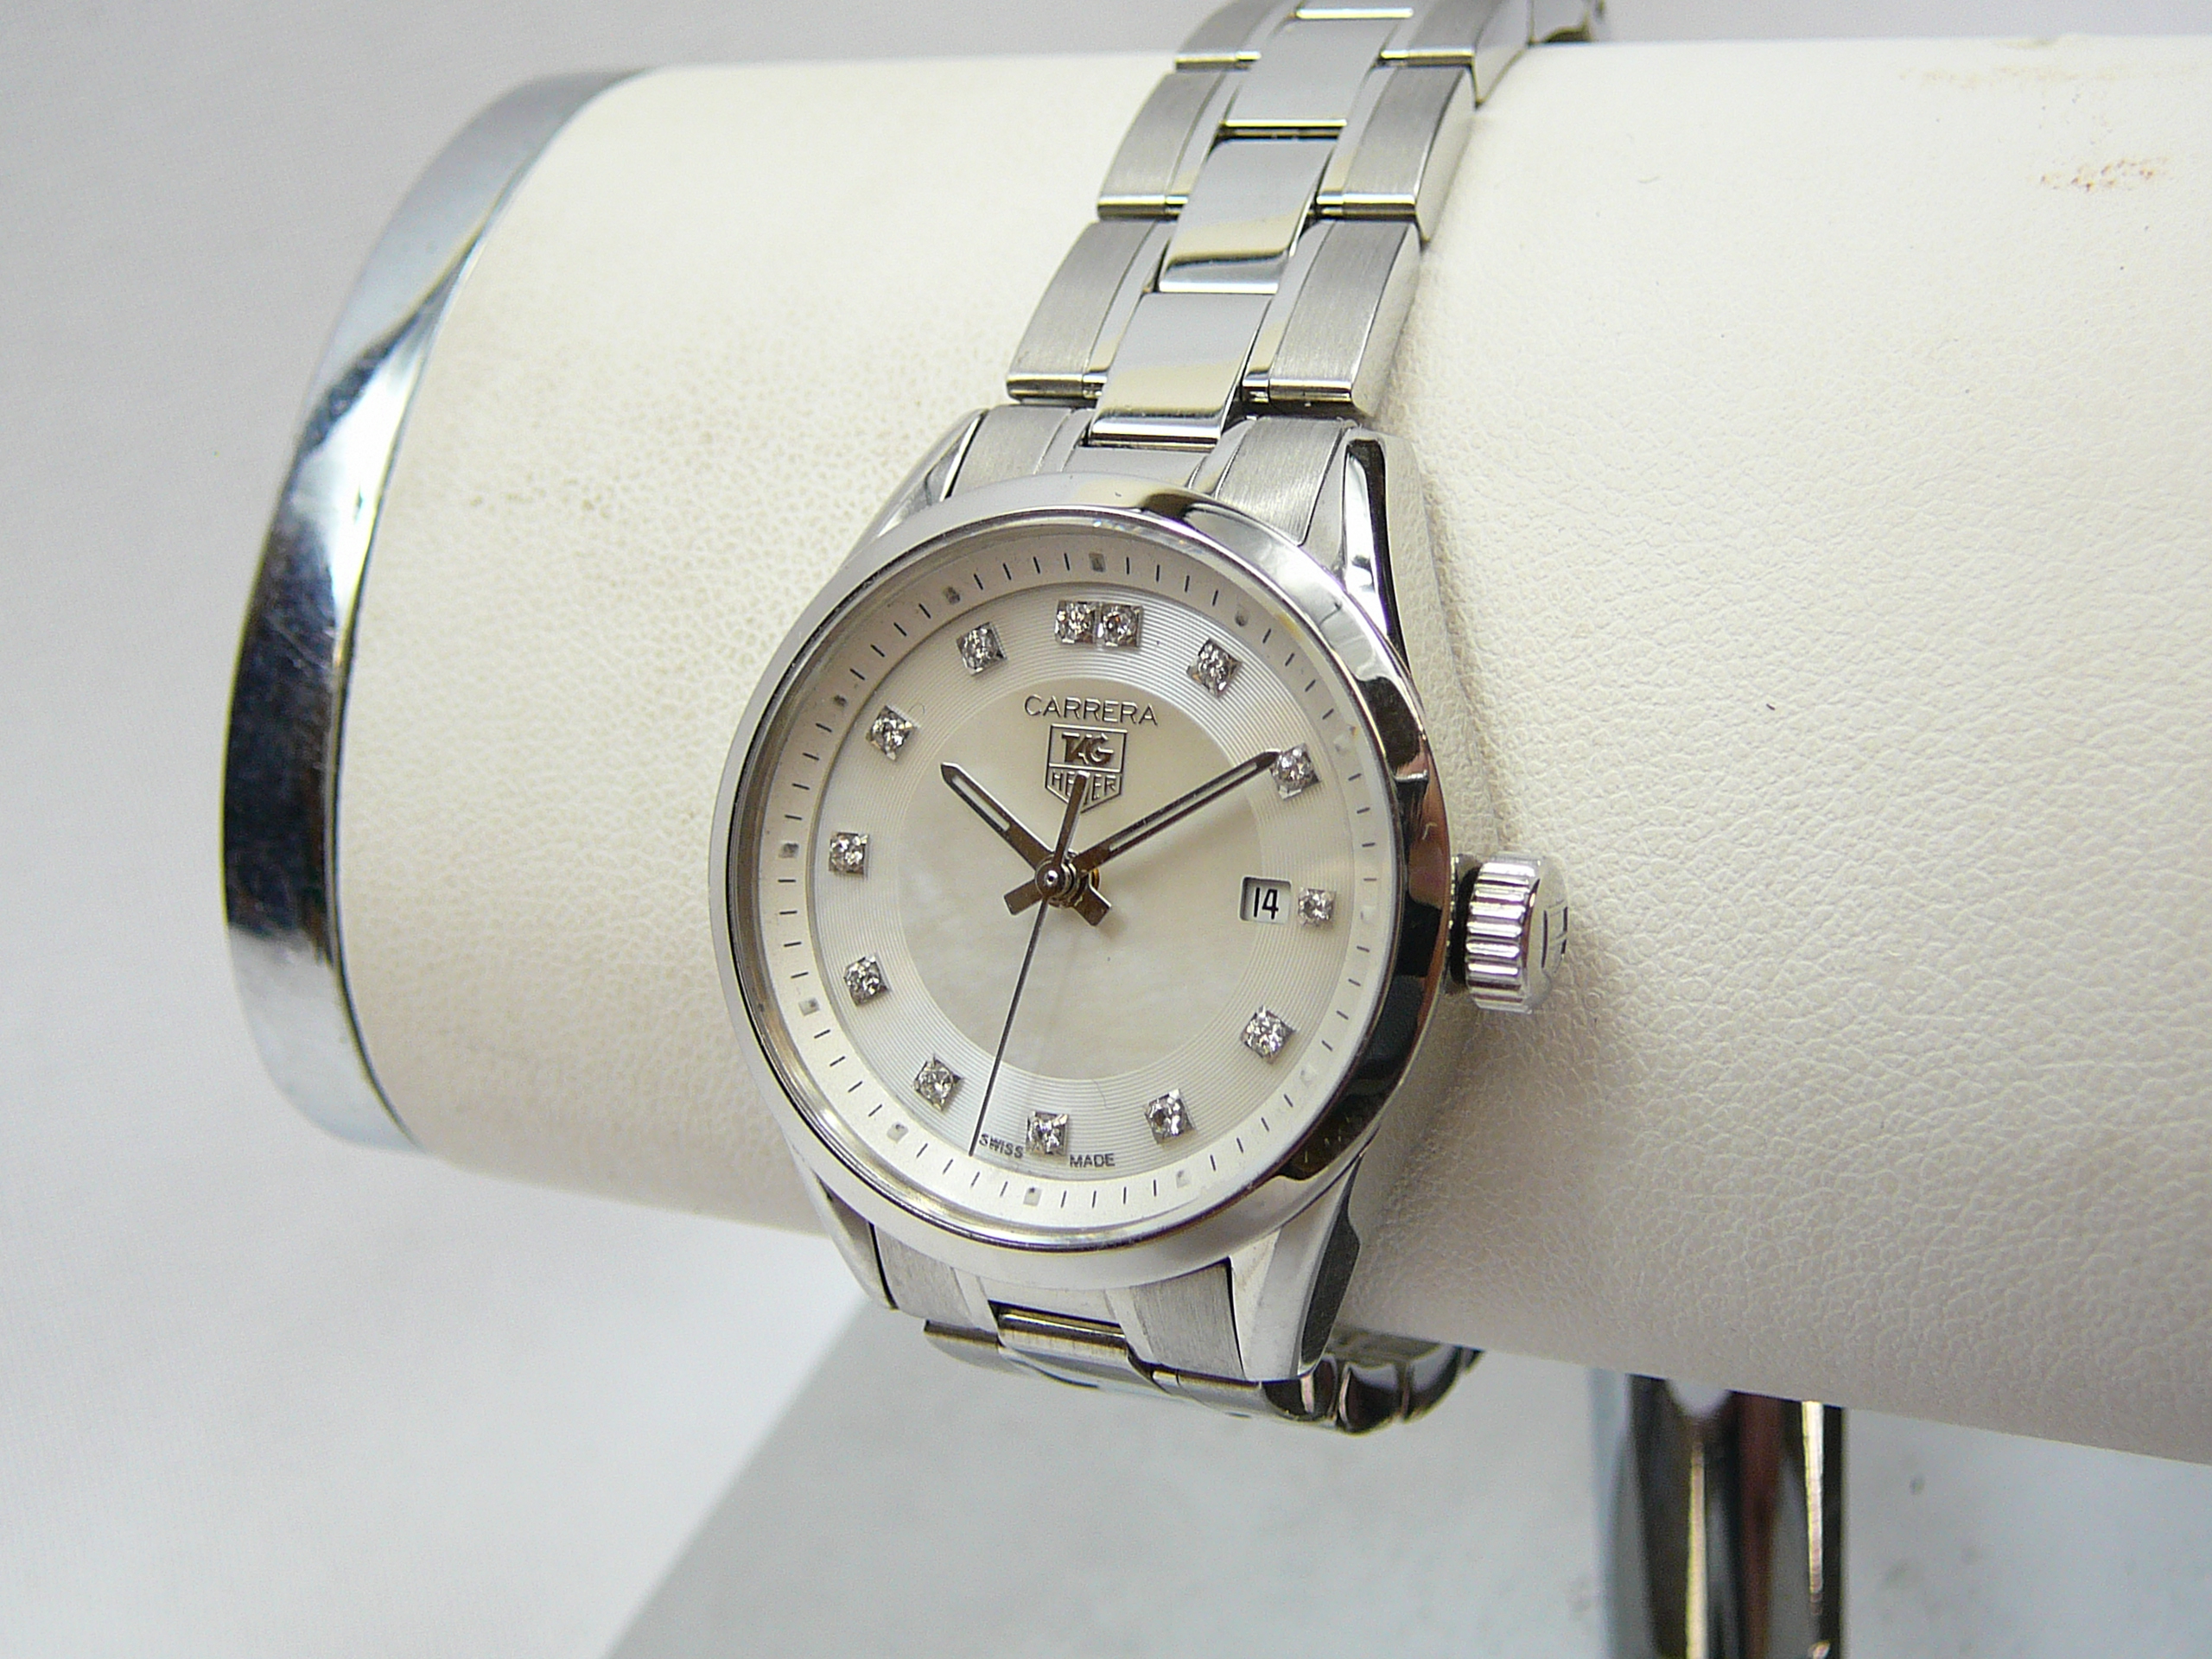 Ladies Tag Heuer Wrist Watch - Image 2 of 3